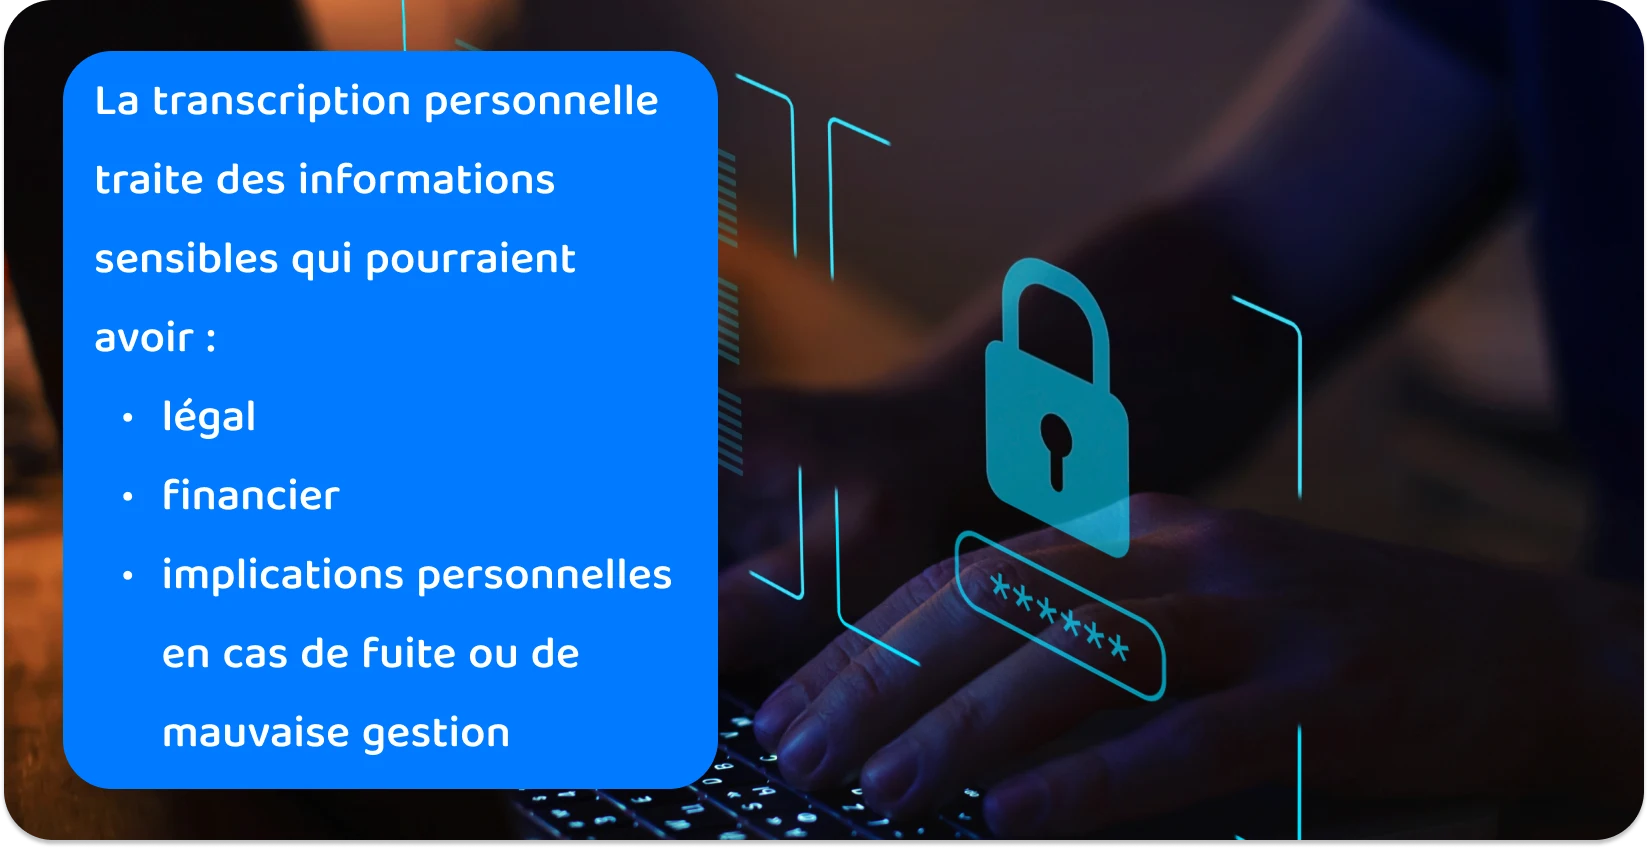 Mains tapant sur un clavier avec une icône de cadenas numérique, illustrant des pratiques de transcription personnelle sécurisée pour des informations sensibles.